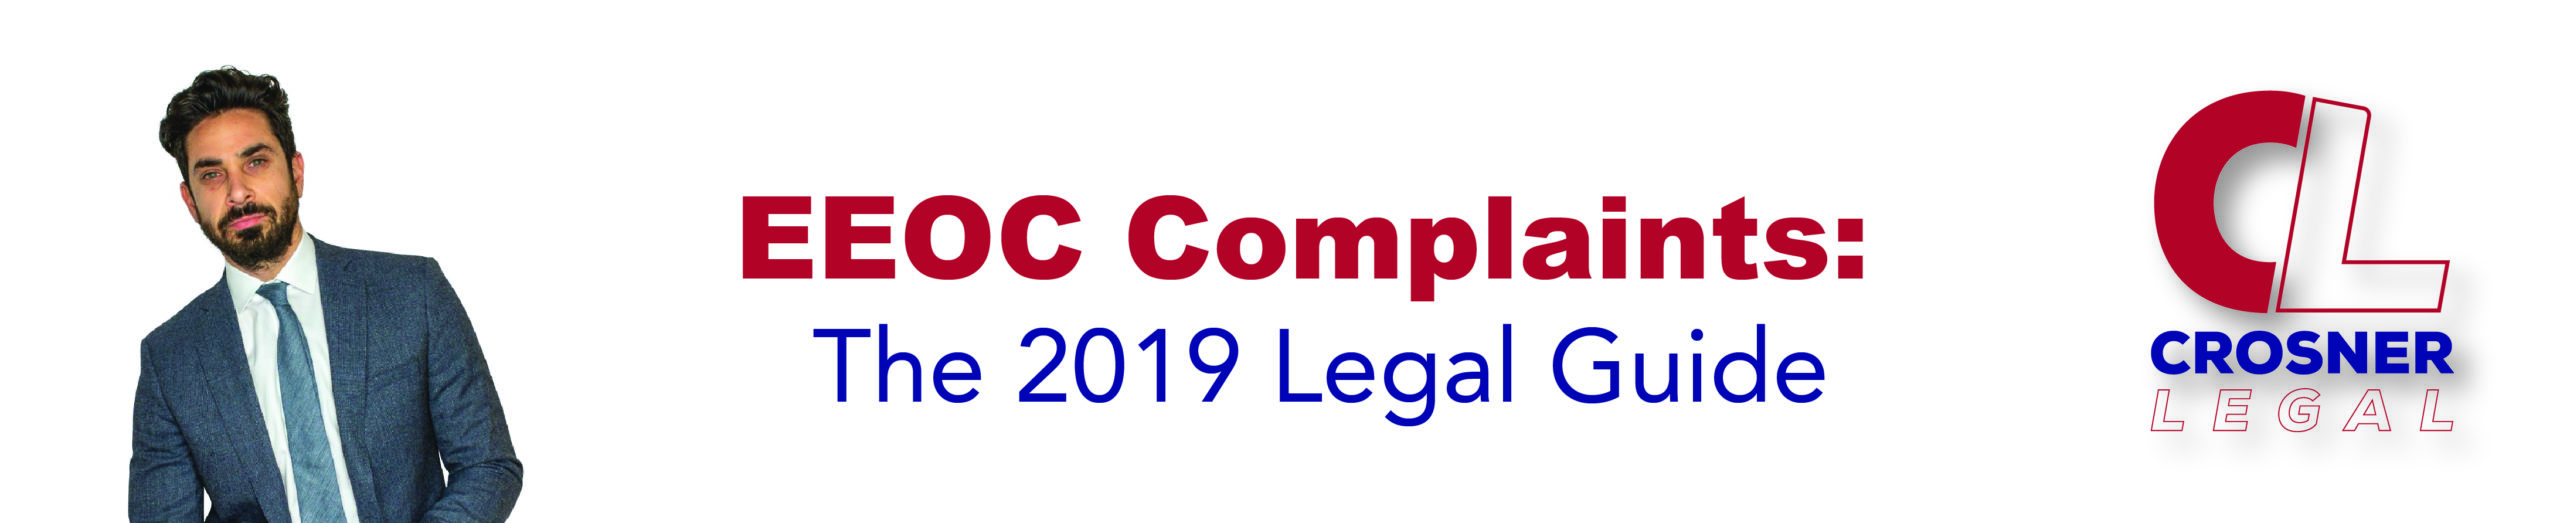 EEOC Complaints: The 2019 Legal Guide